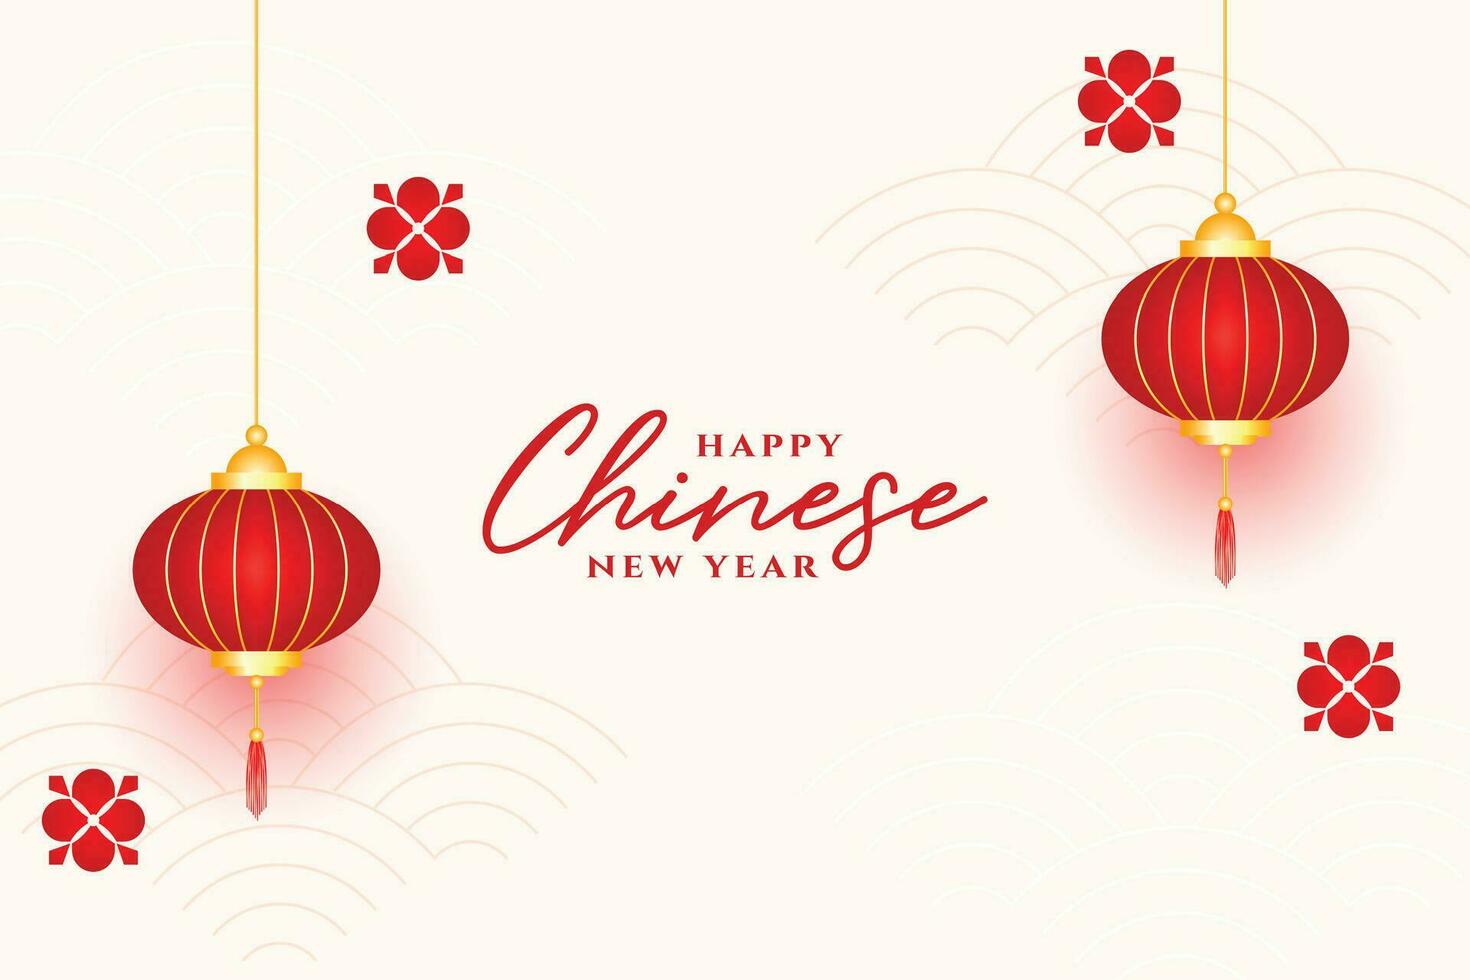 realista chino nuevo año deseos tarjeta con linterna decoración vector